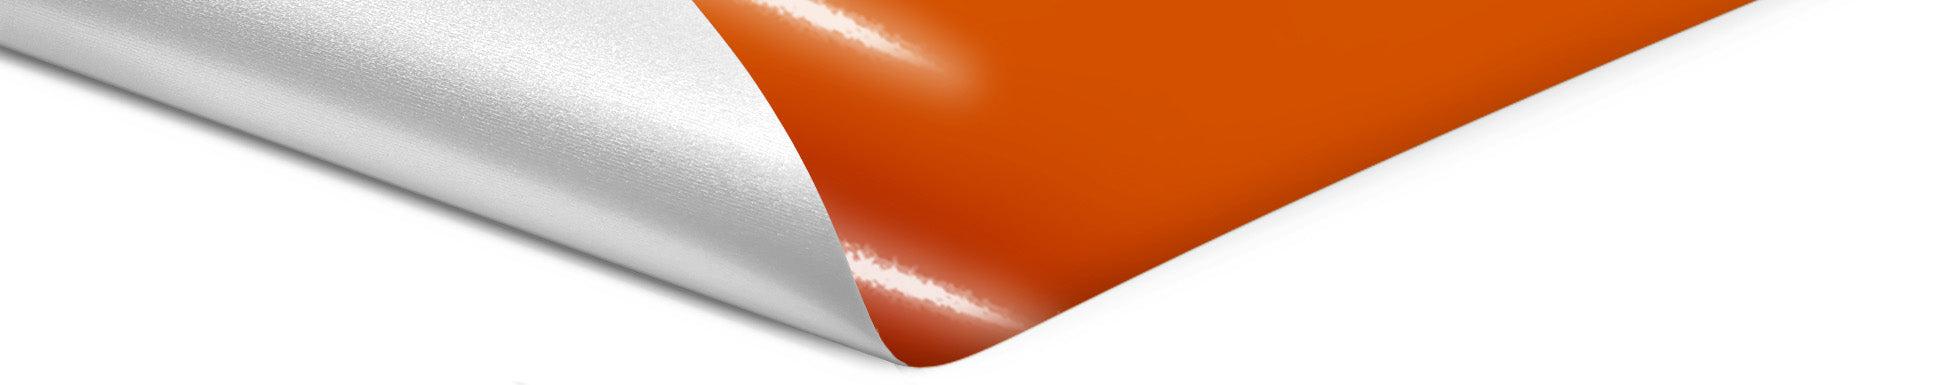 Orange vinyl wrap